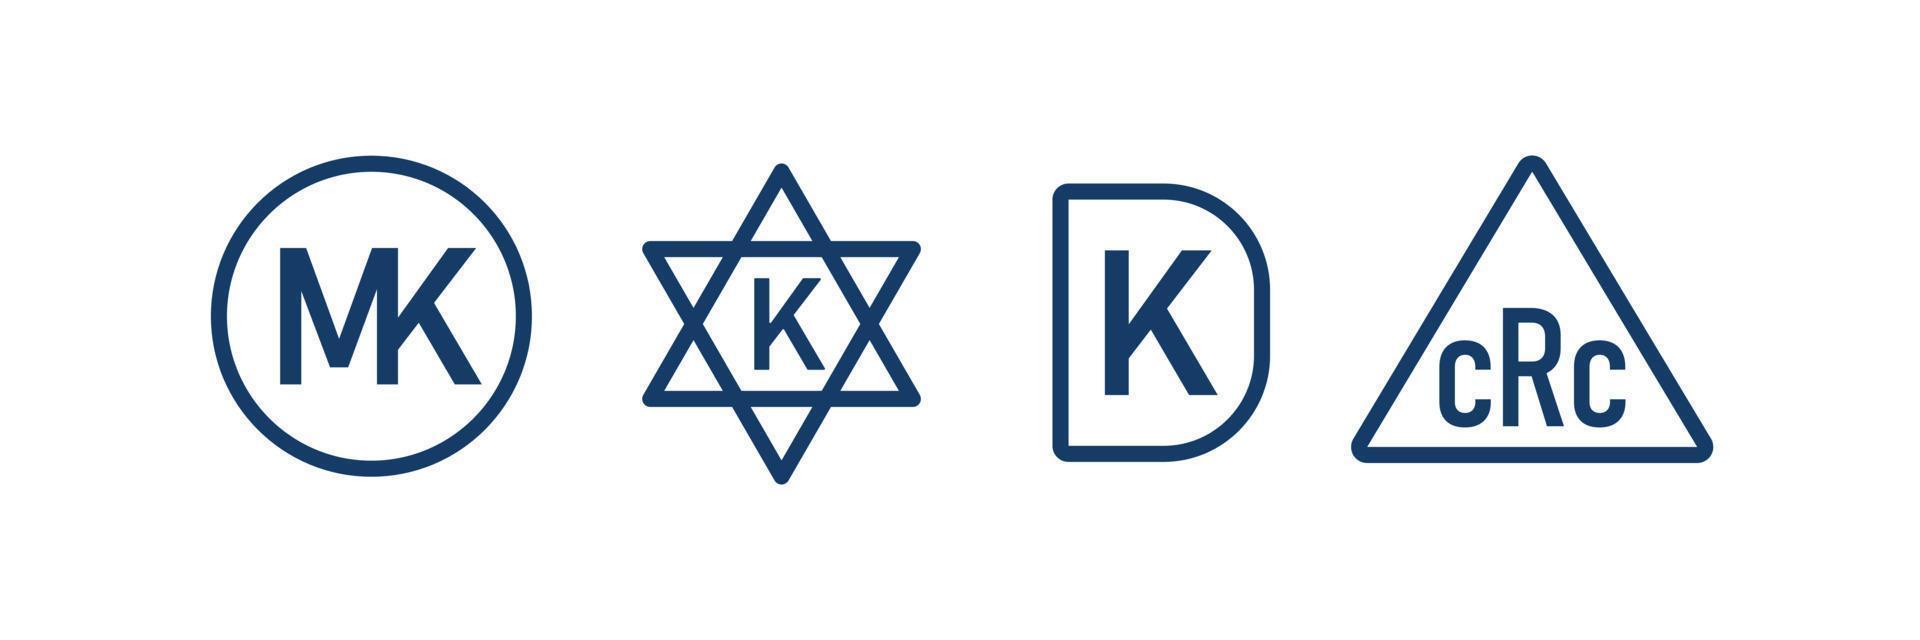 conjunto de símbolos kosher. ícone para embalagem. produto natural kashrut. ilustração vetorial em fundo branco vetor